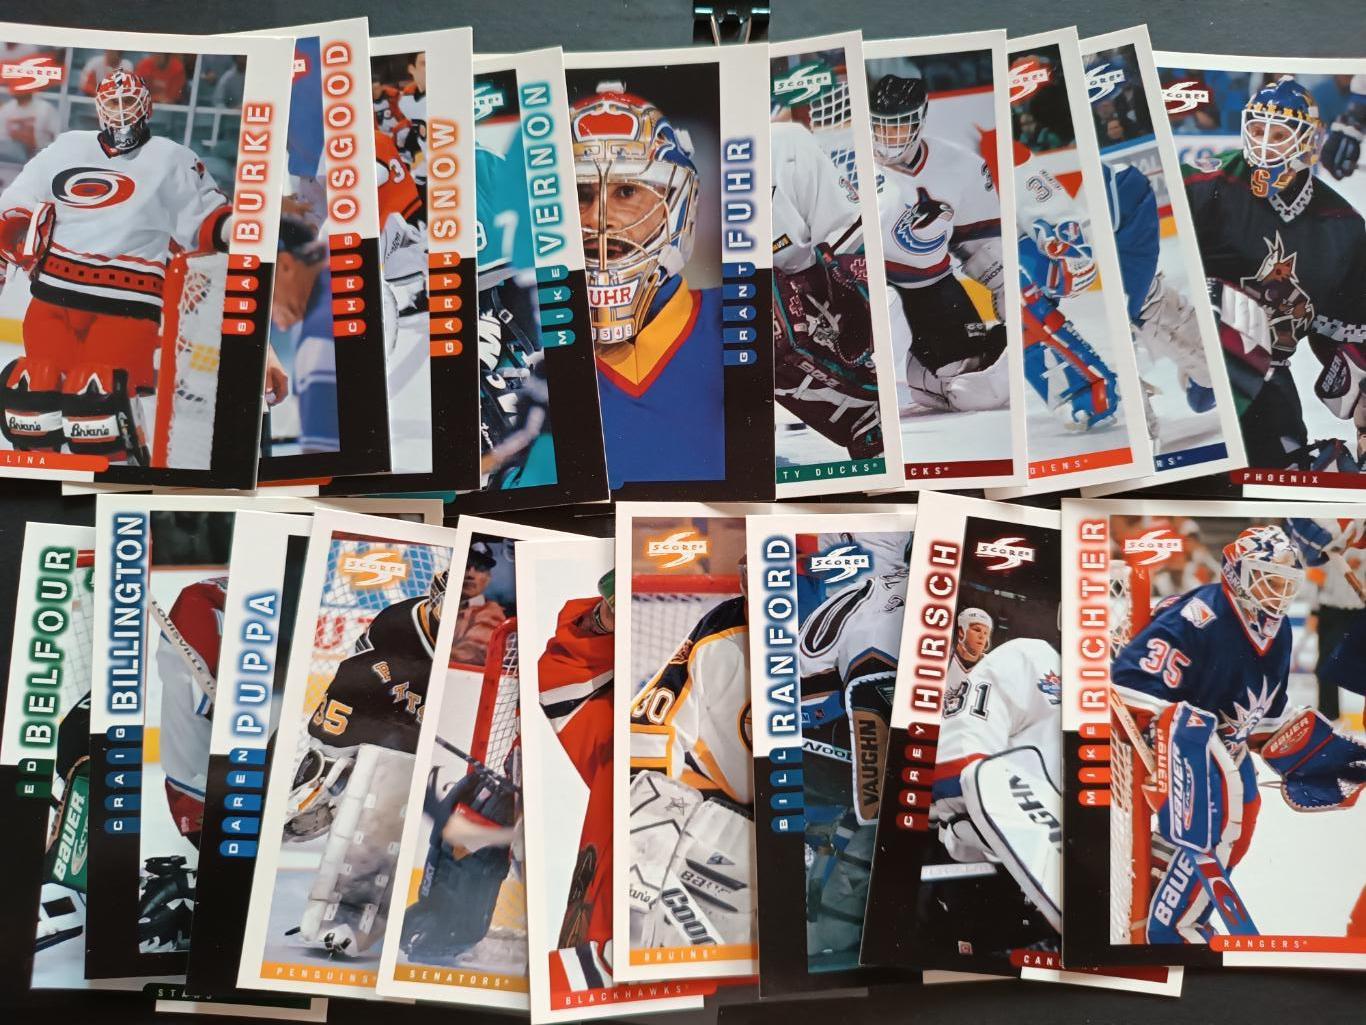 ХОККЕЙ НАБОР КАРТОЧЕК НХЛ 1997-98 SCORE OFFICIAL HOCKEY CARD SET #1-270